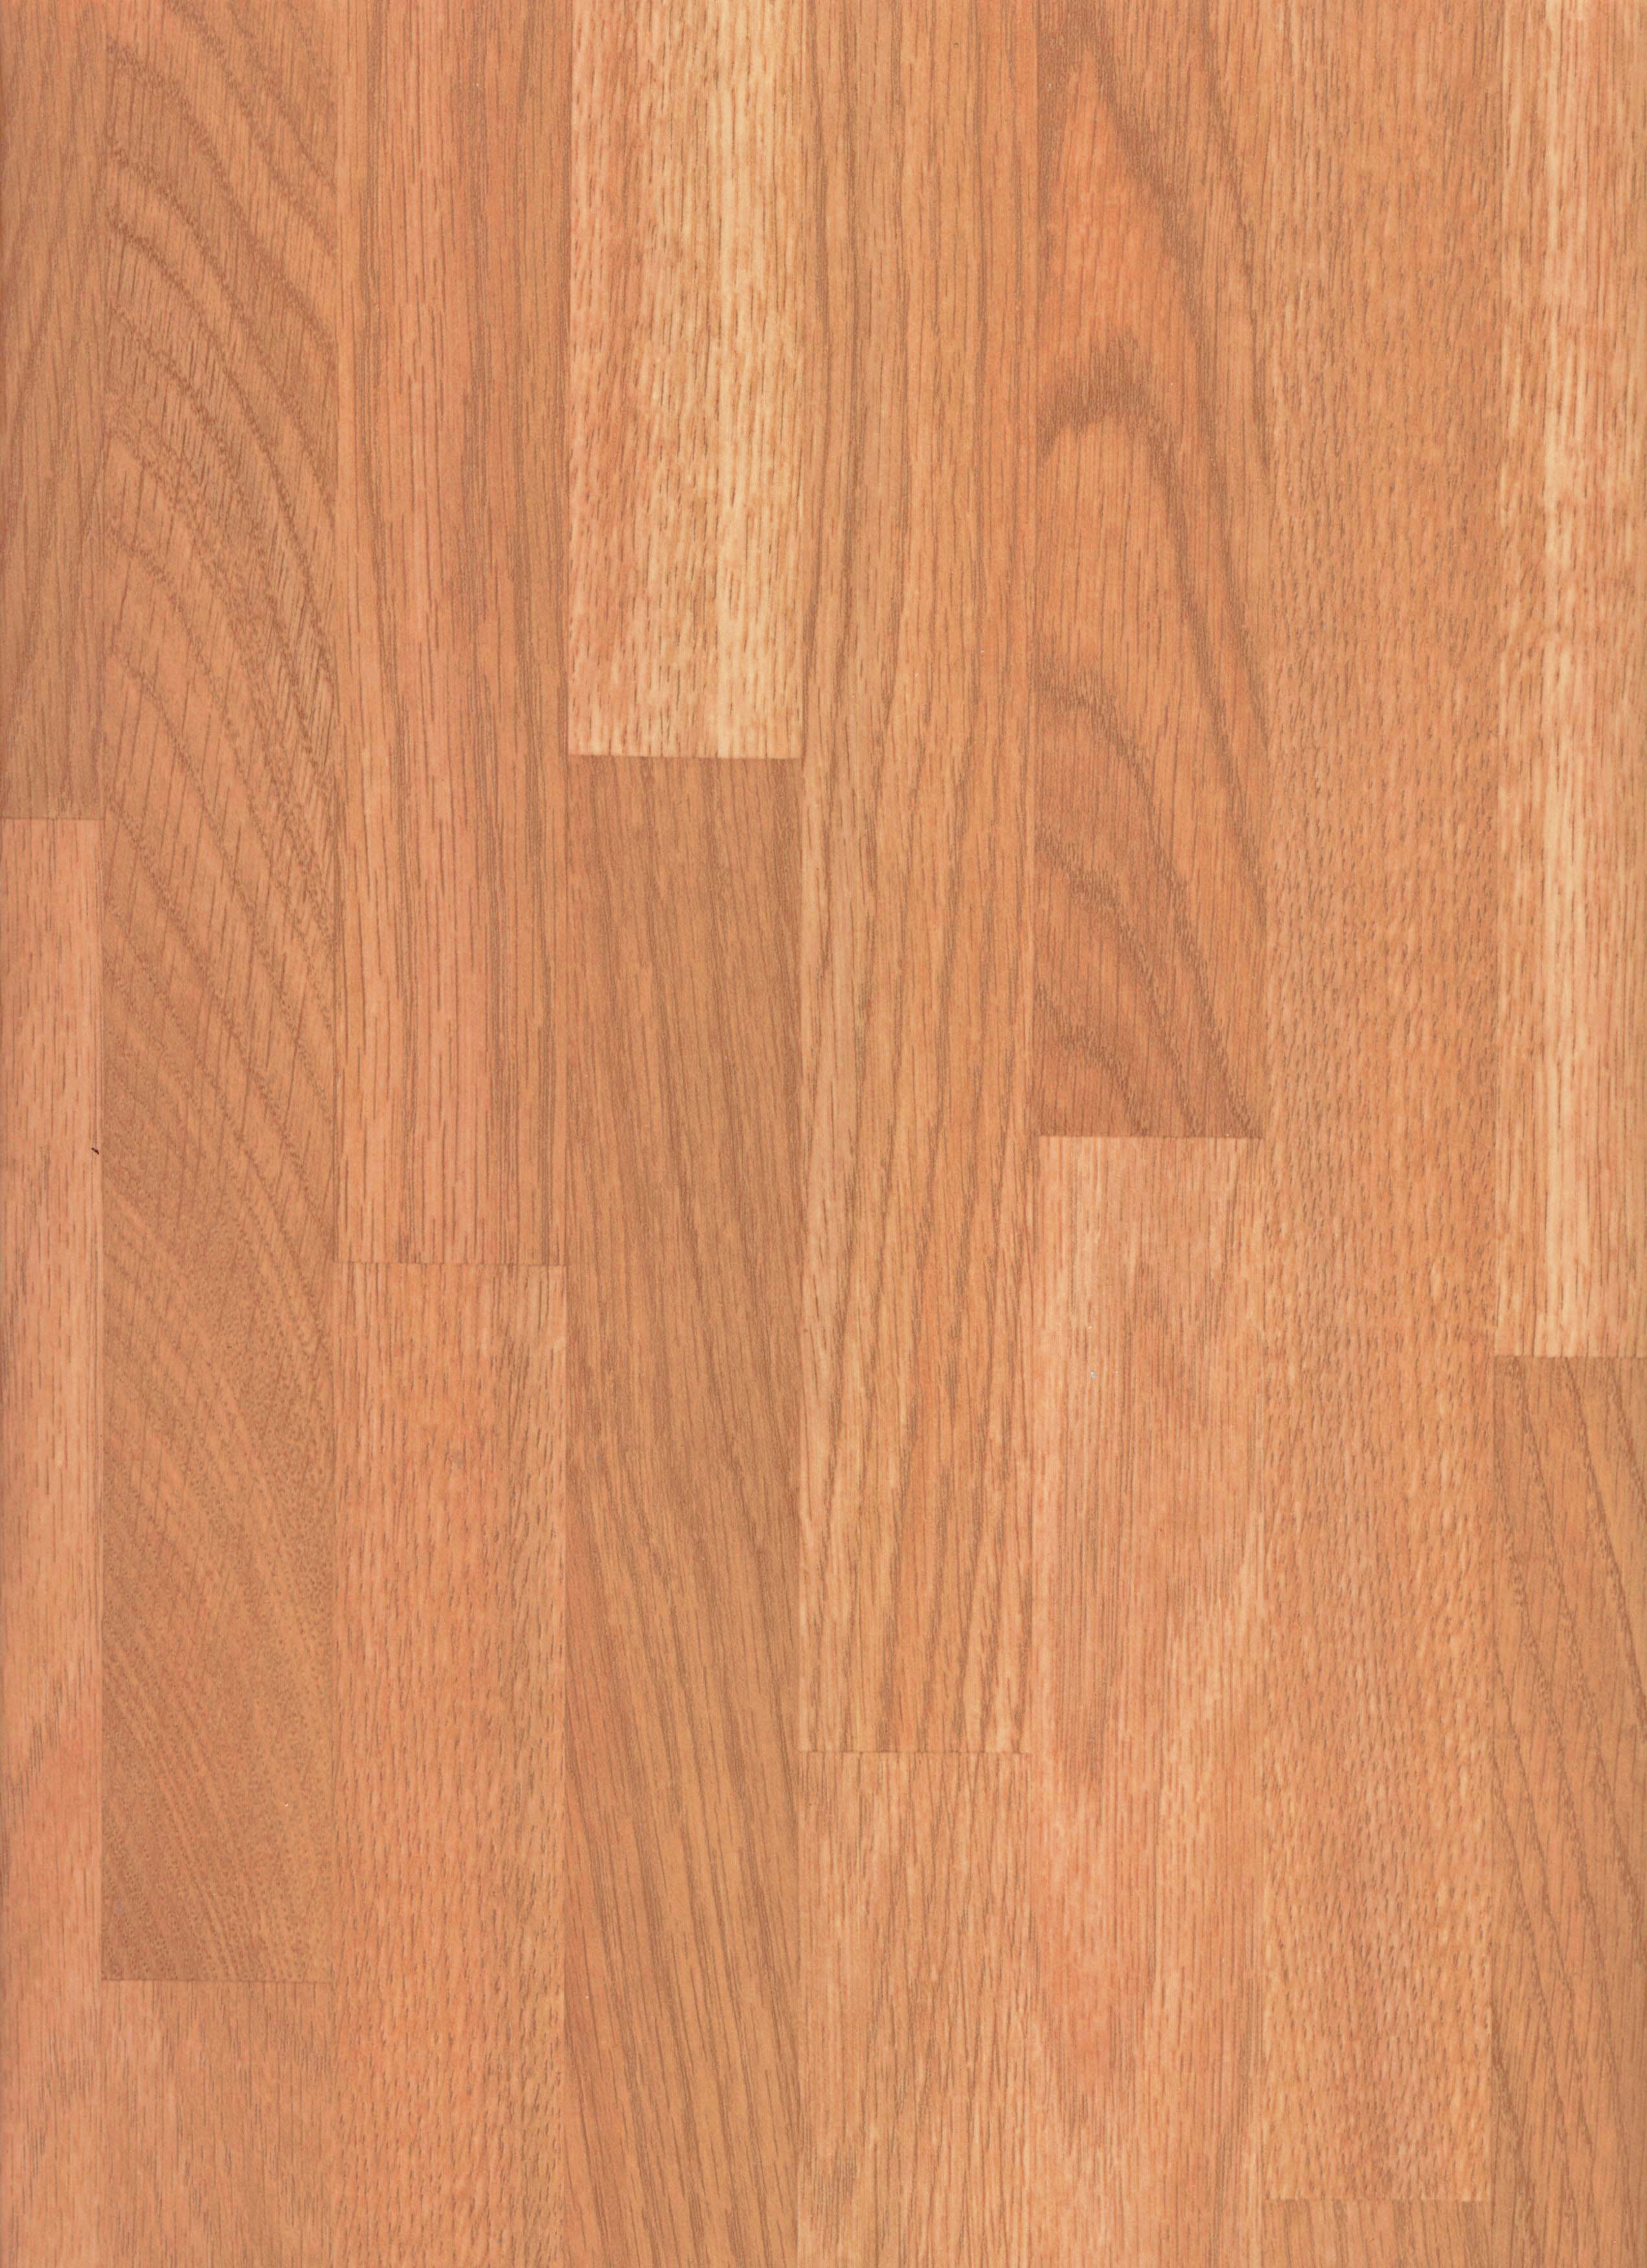 Apo Floors Russet Oak, Russet Oak Laminate Flooring